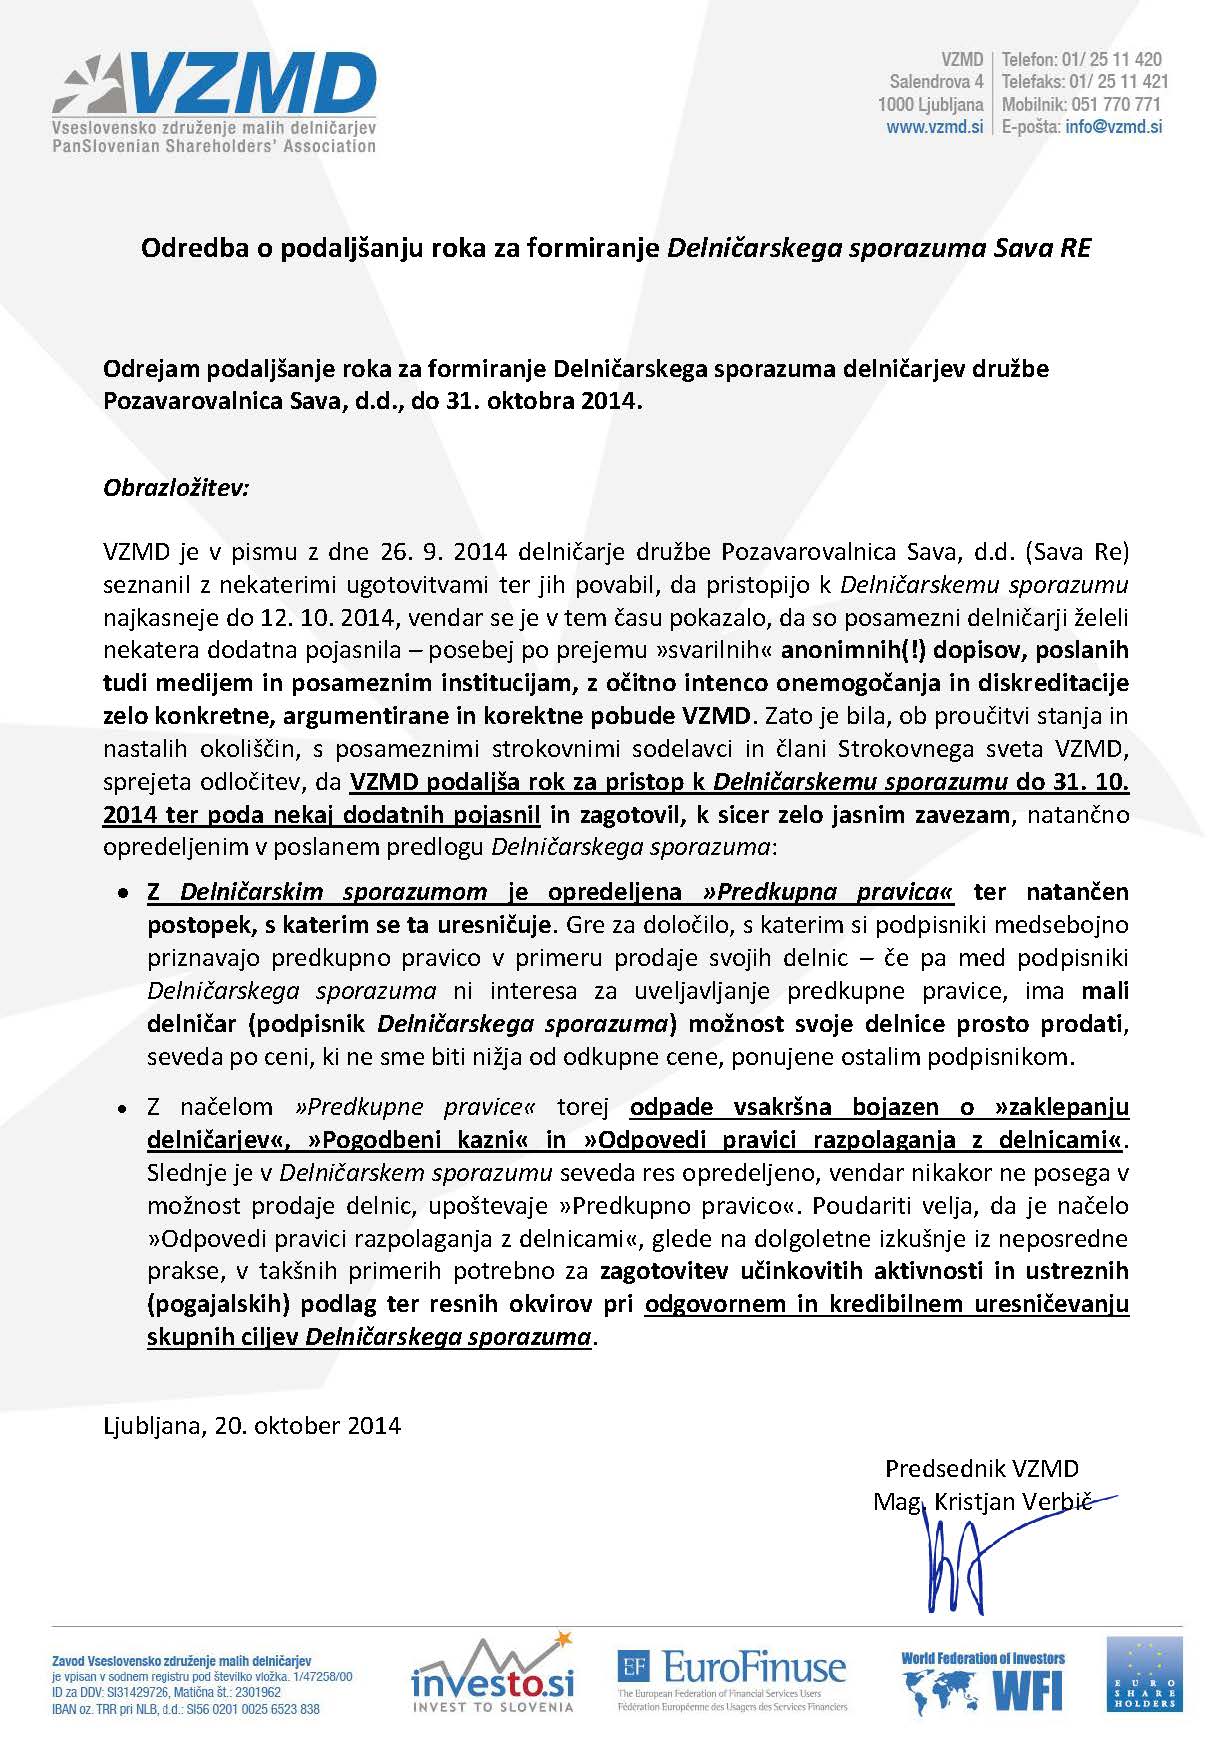 Odredba o podaljšanju roka za formiranje Delničarskega sporazuma Sava RE 20okt 2014